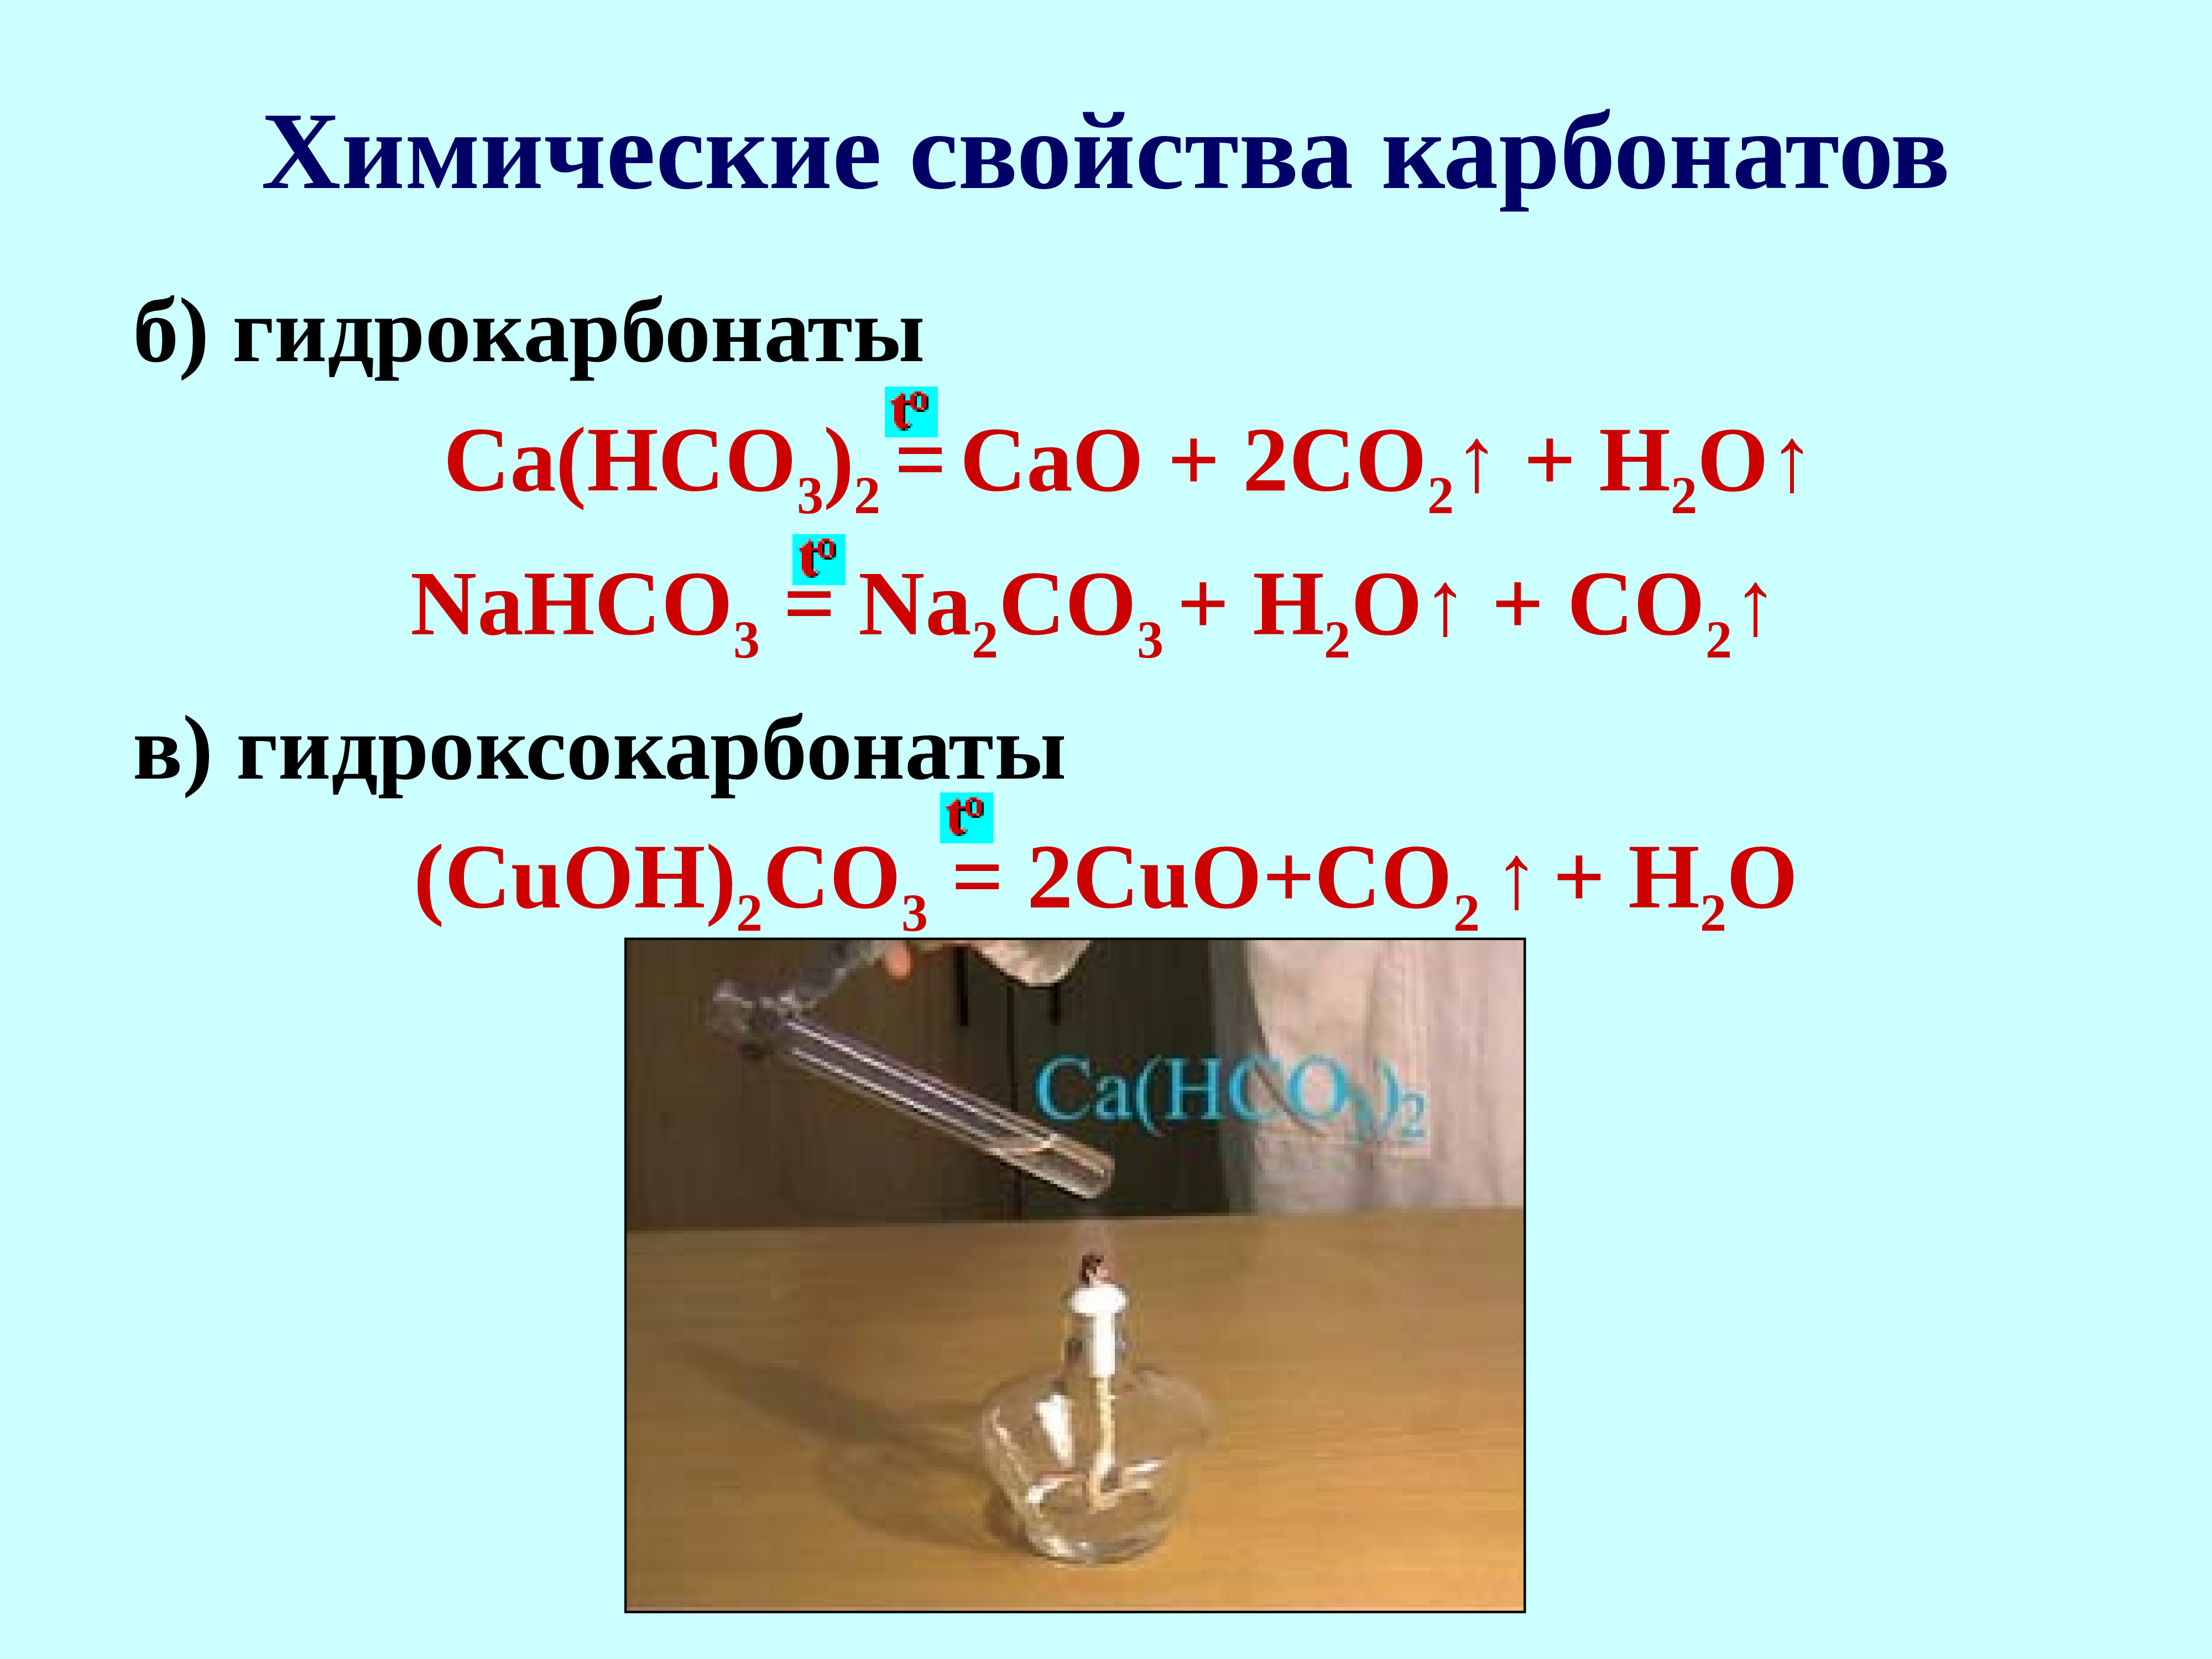 Cuo nahco3. Co2 + карбонат = гидрокарбонат. Химические свойства карбонатов. Гидроксокарбонат меди II формула. Получение карбонатов и гидрокарбонатов.